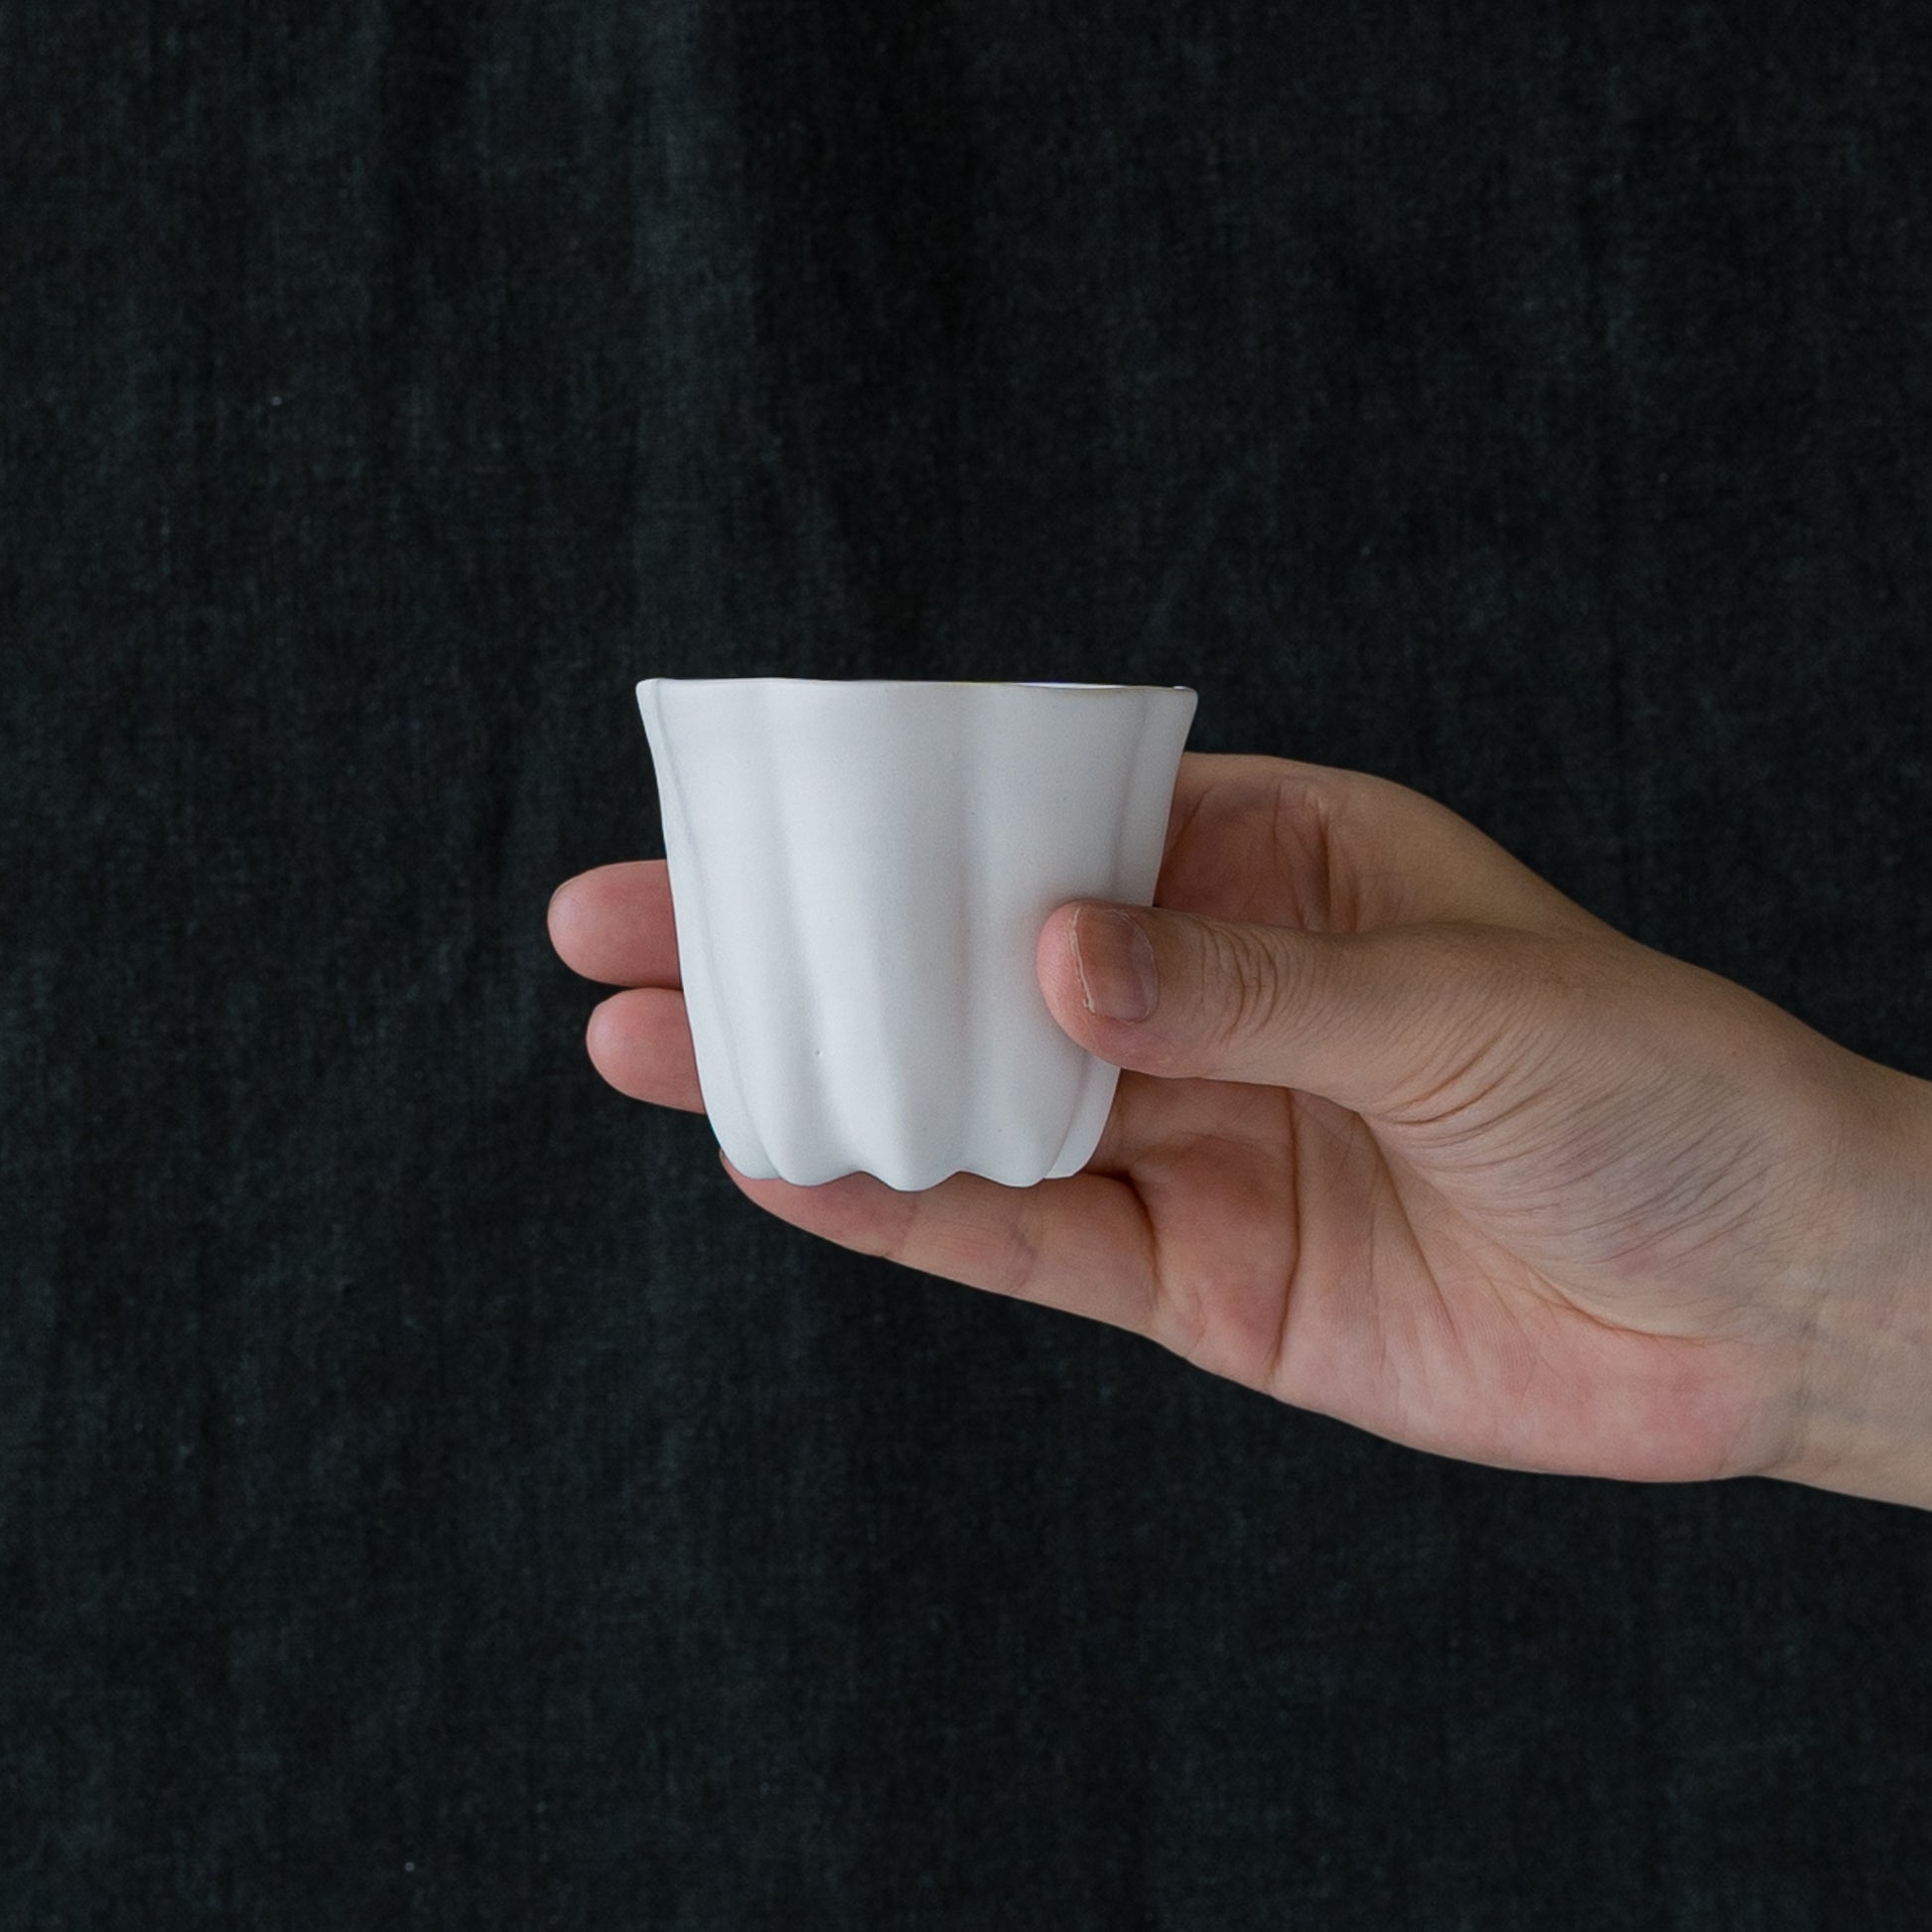 しっとり柔らかな白が美しい藤村佳澄さんの白磁のカヌレ茶器